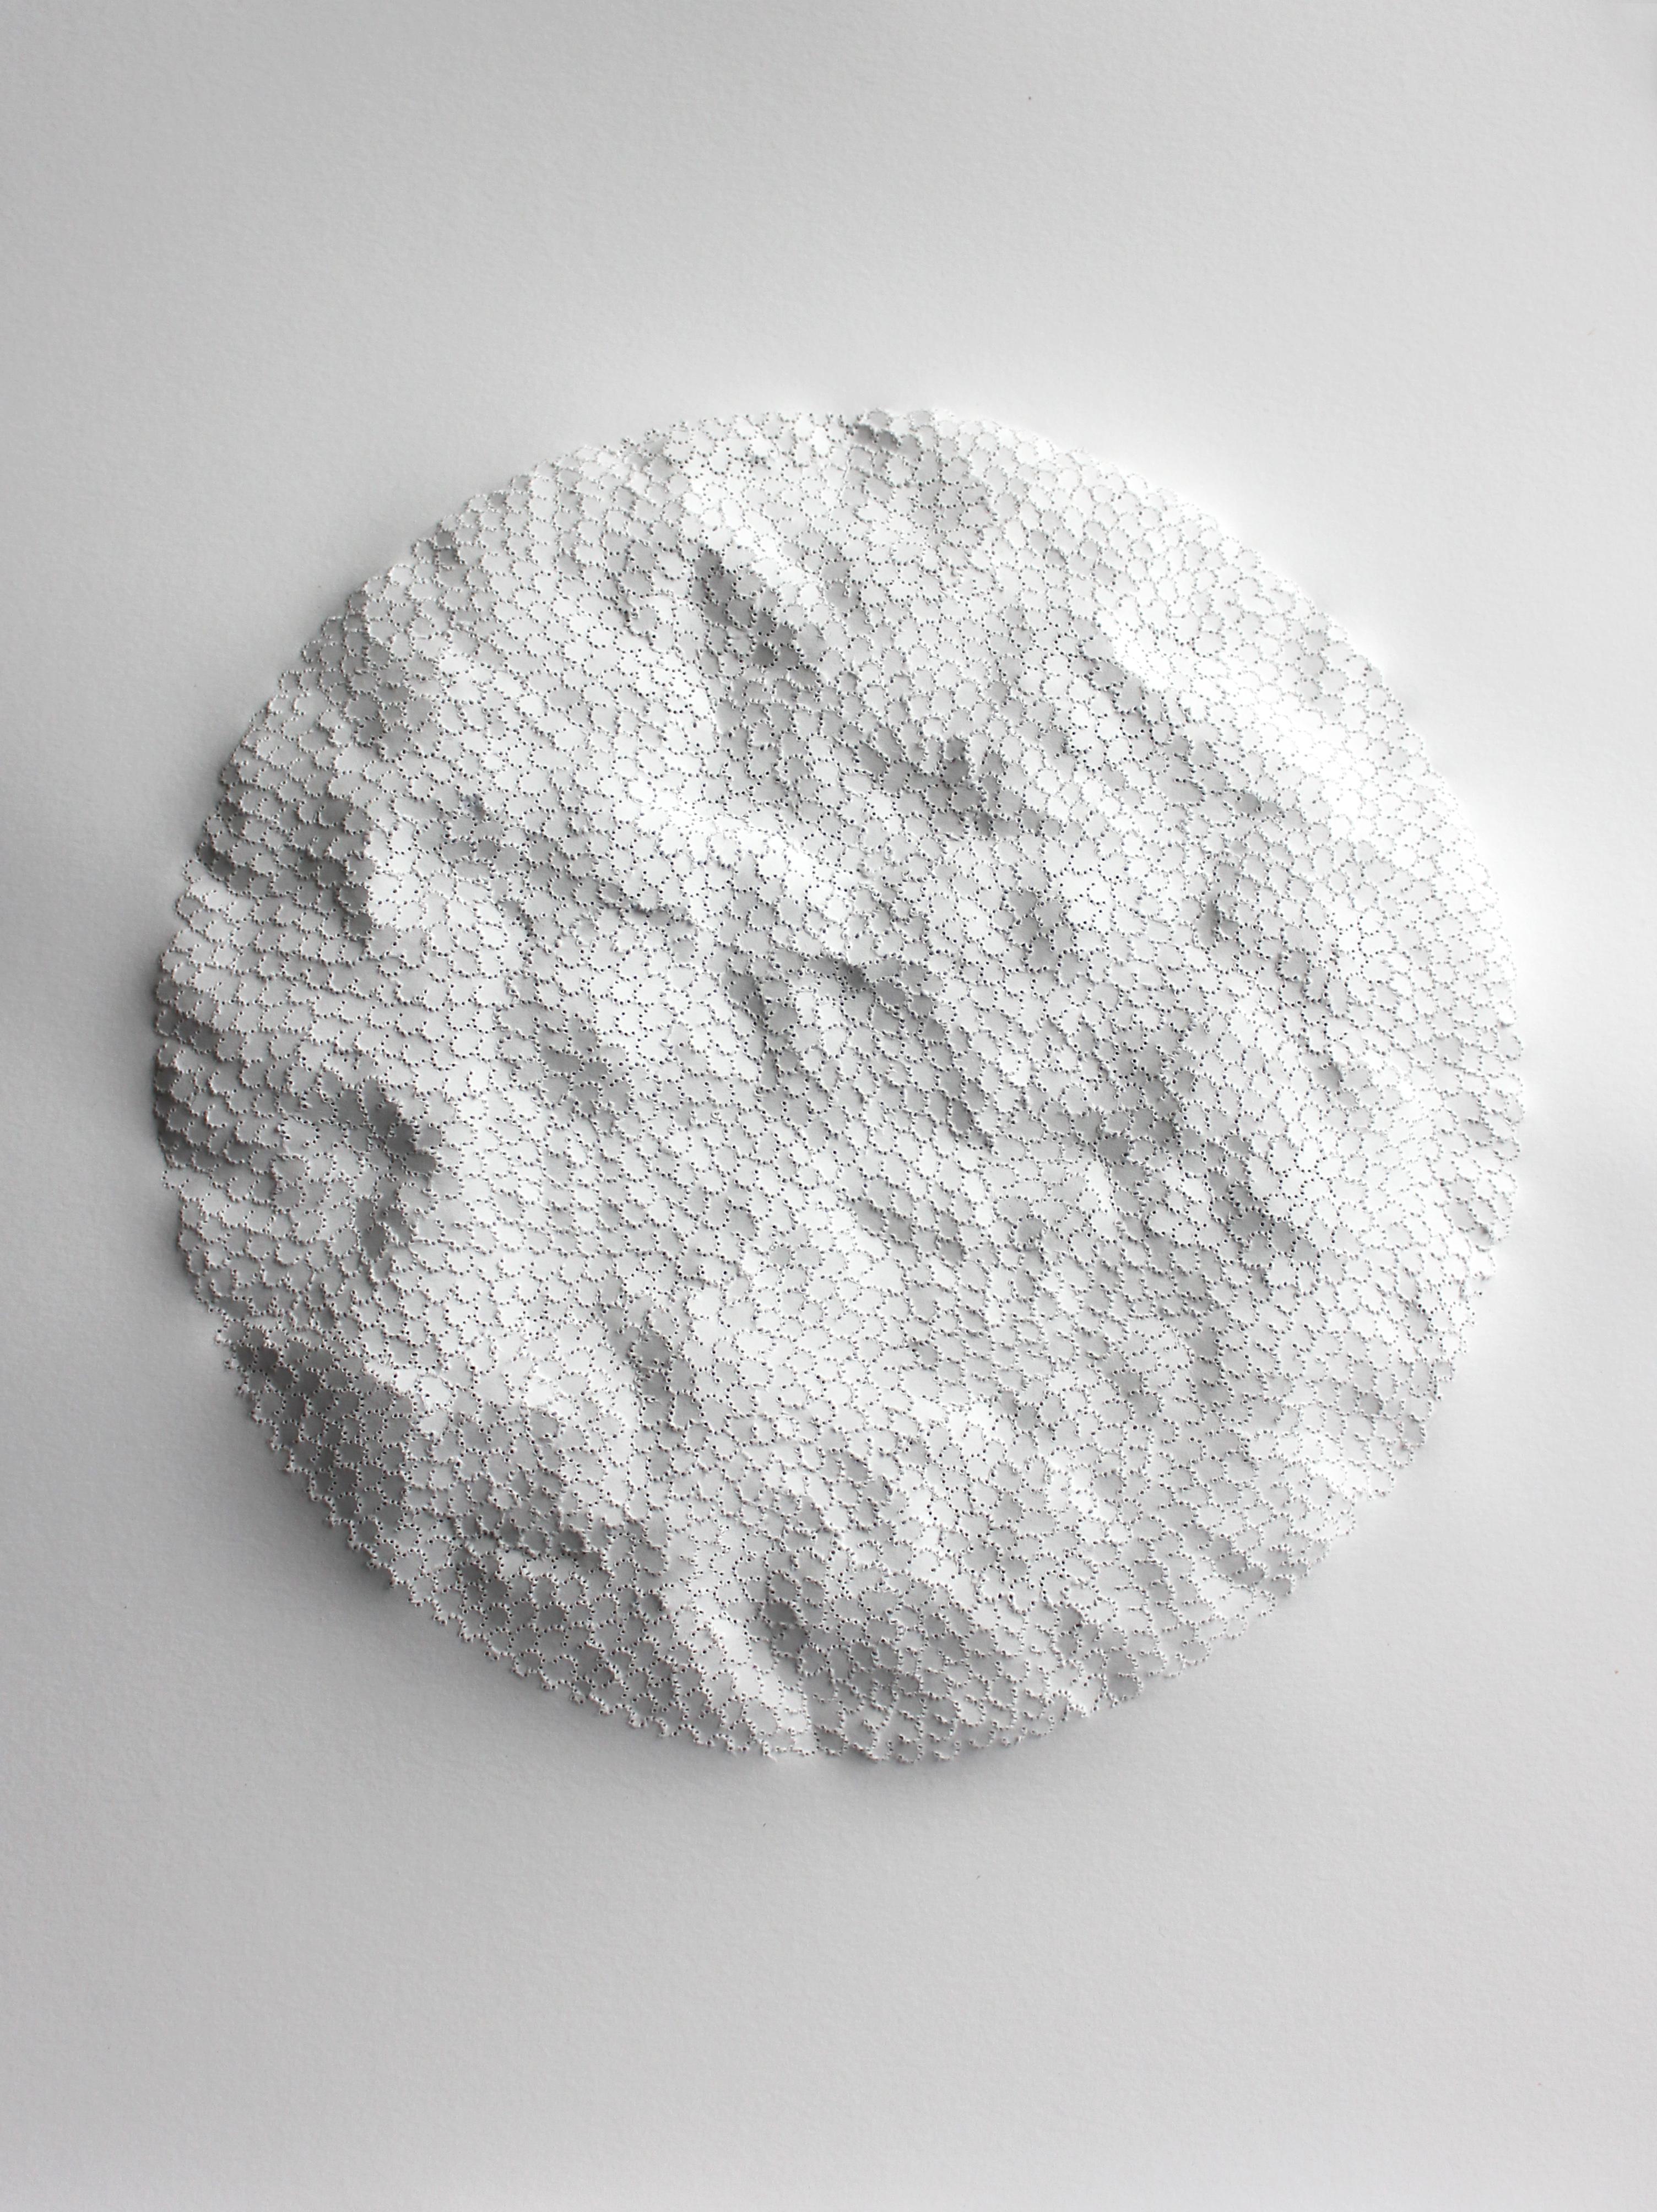 Anne-Charlotte Saliba Abstract Drawing – White Moon EC 17 - rundes texturiertes abstraktes von der Nature inspiriertes 3D-Skulpturpapier